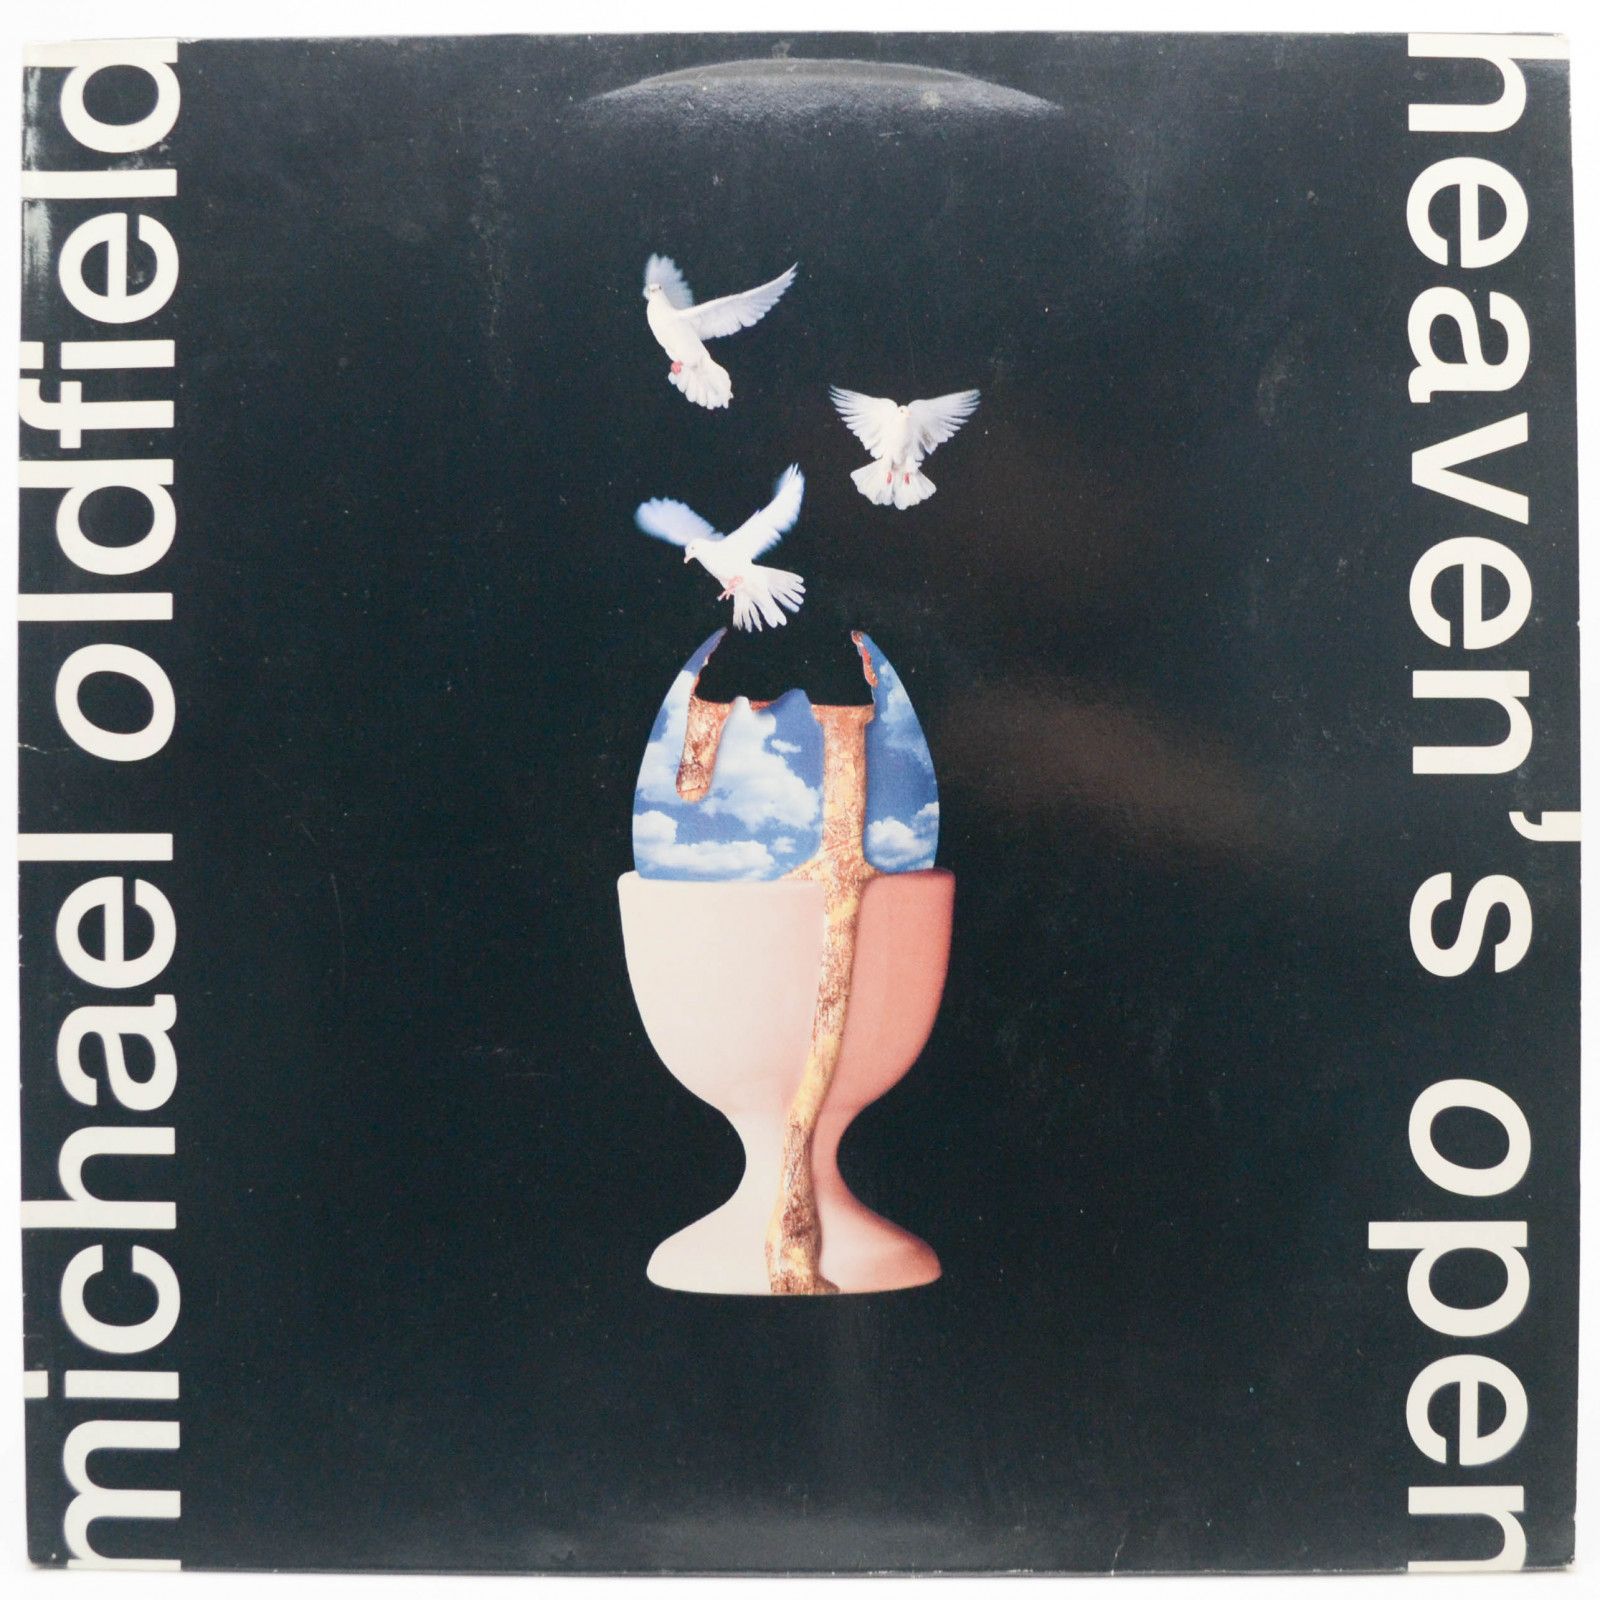 Michael Oldfield — Heaven's Open, 1991